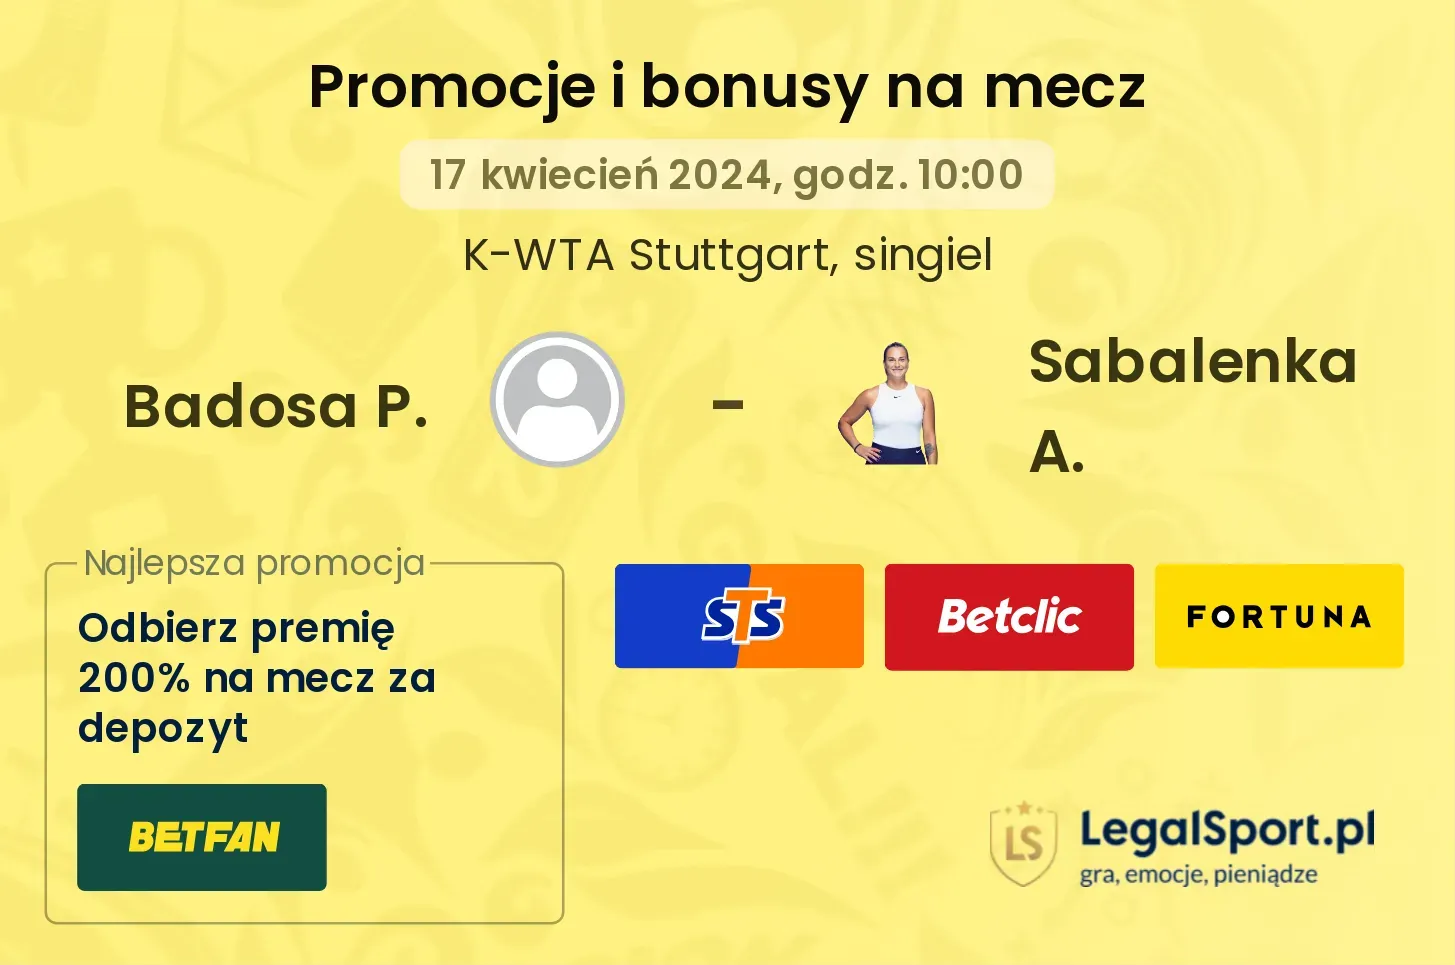 Badosa P. - Sabalenka A. promocje bonusy na mecz